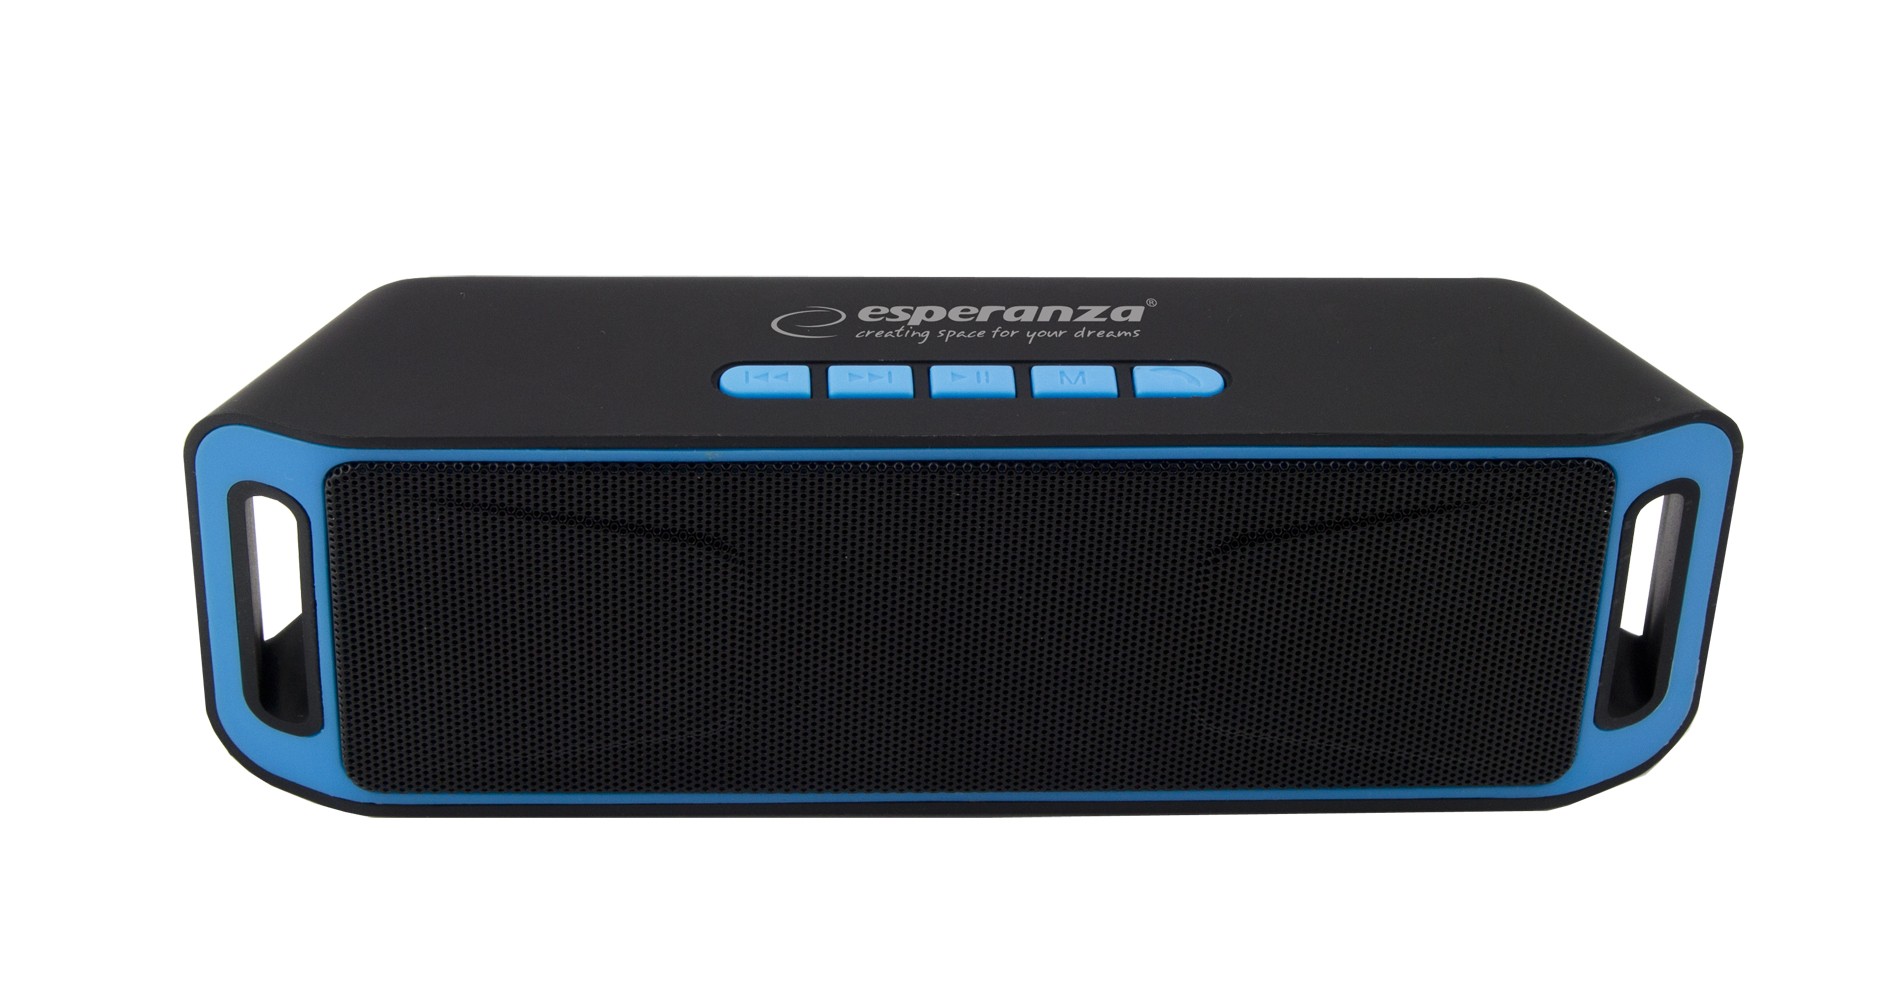 Boxa portabila Esperanza cu Radio FM, Bluetooth 4.1, 6W, 800mAh, microUSB, negru albastru 4.1